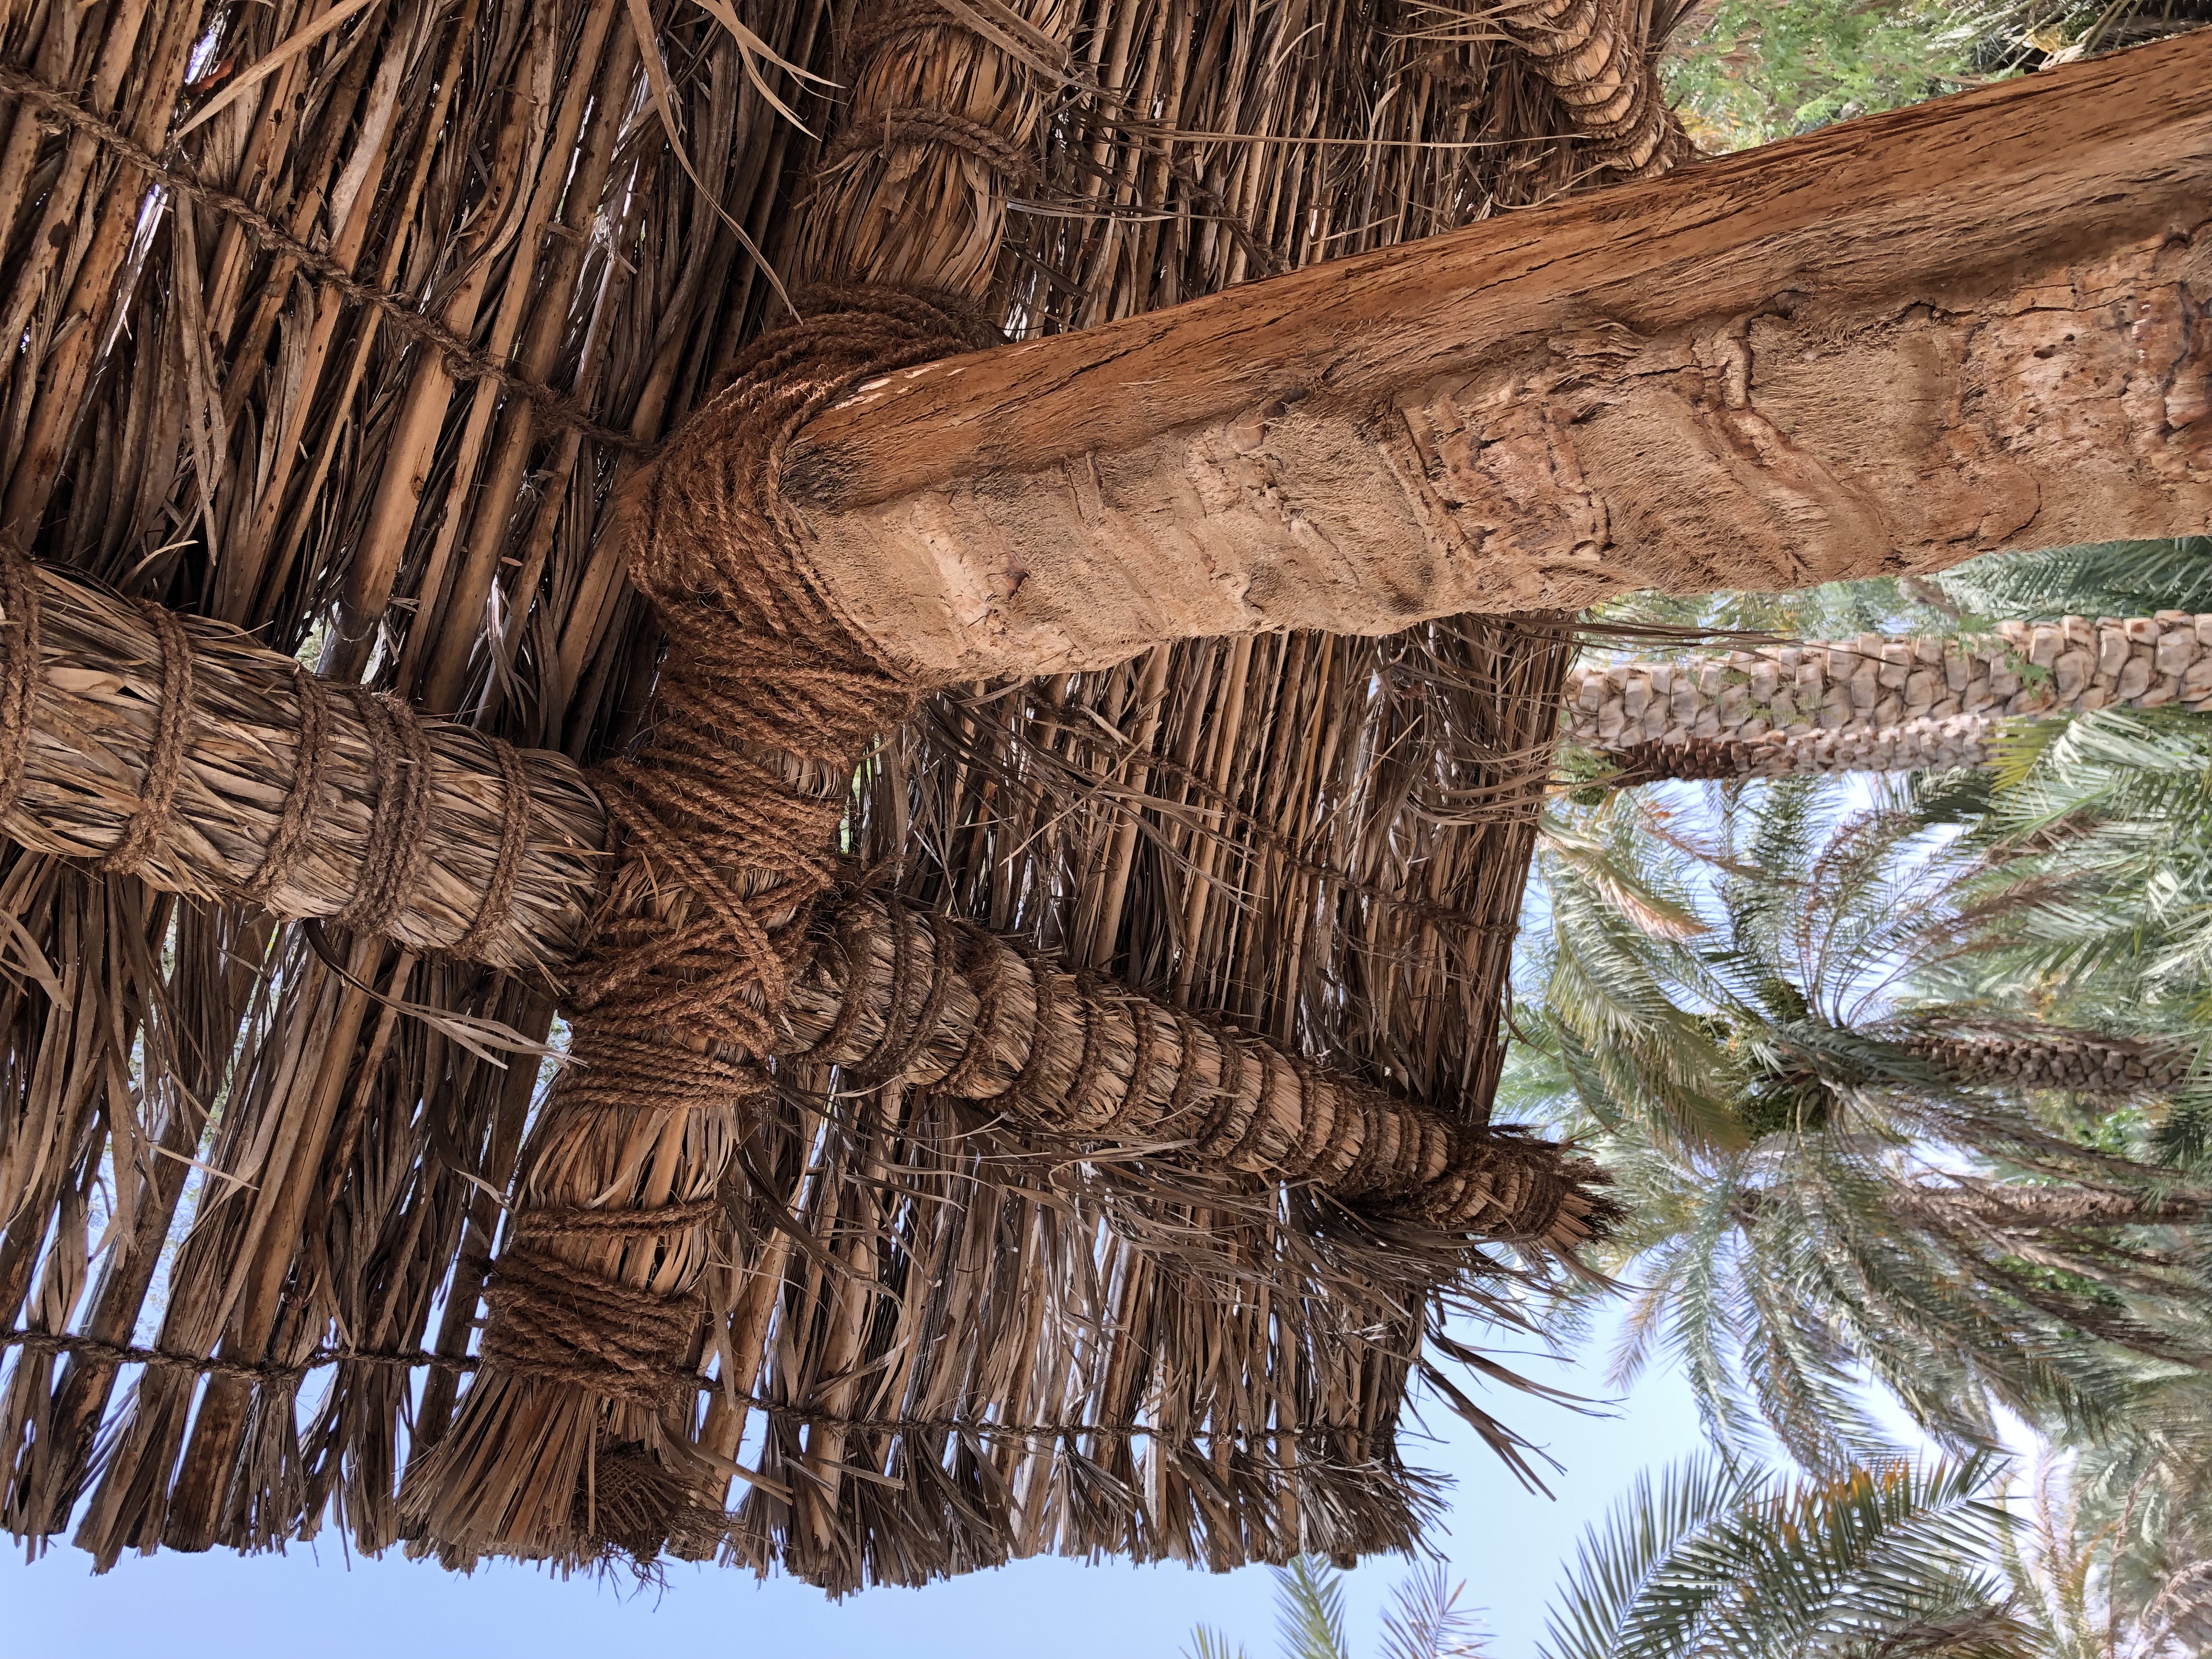 Például ez a tetőszerkezet a pálma különböző részeinek felhasználásával készült.